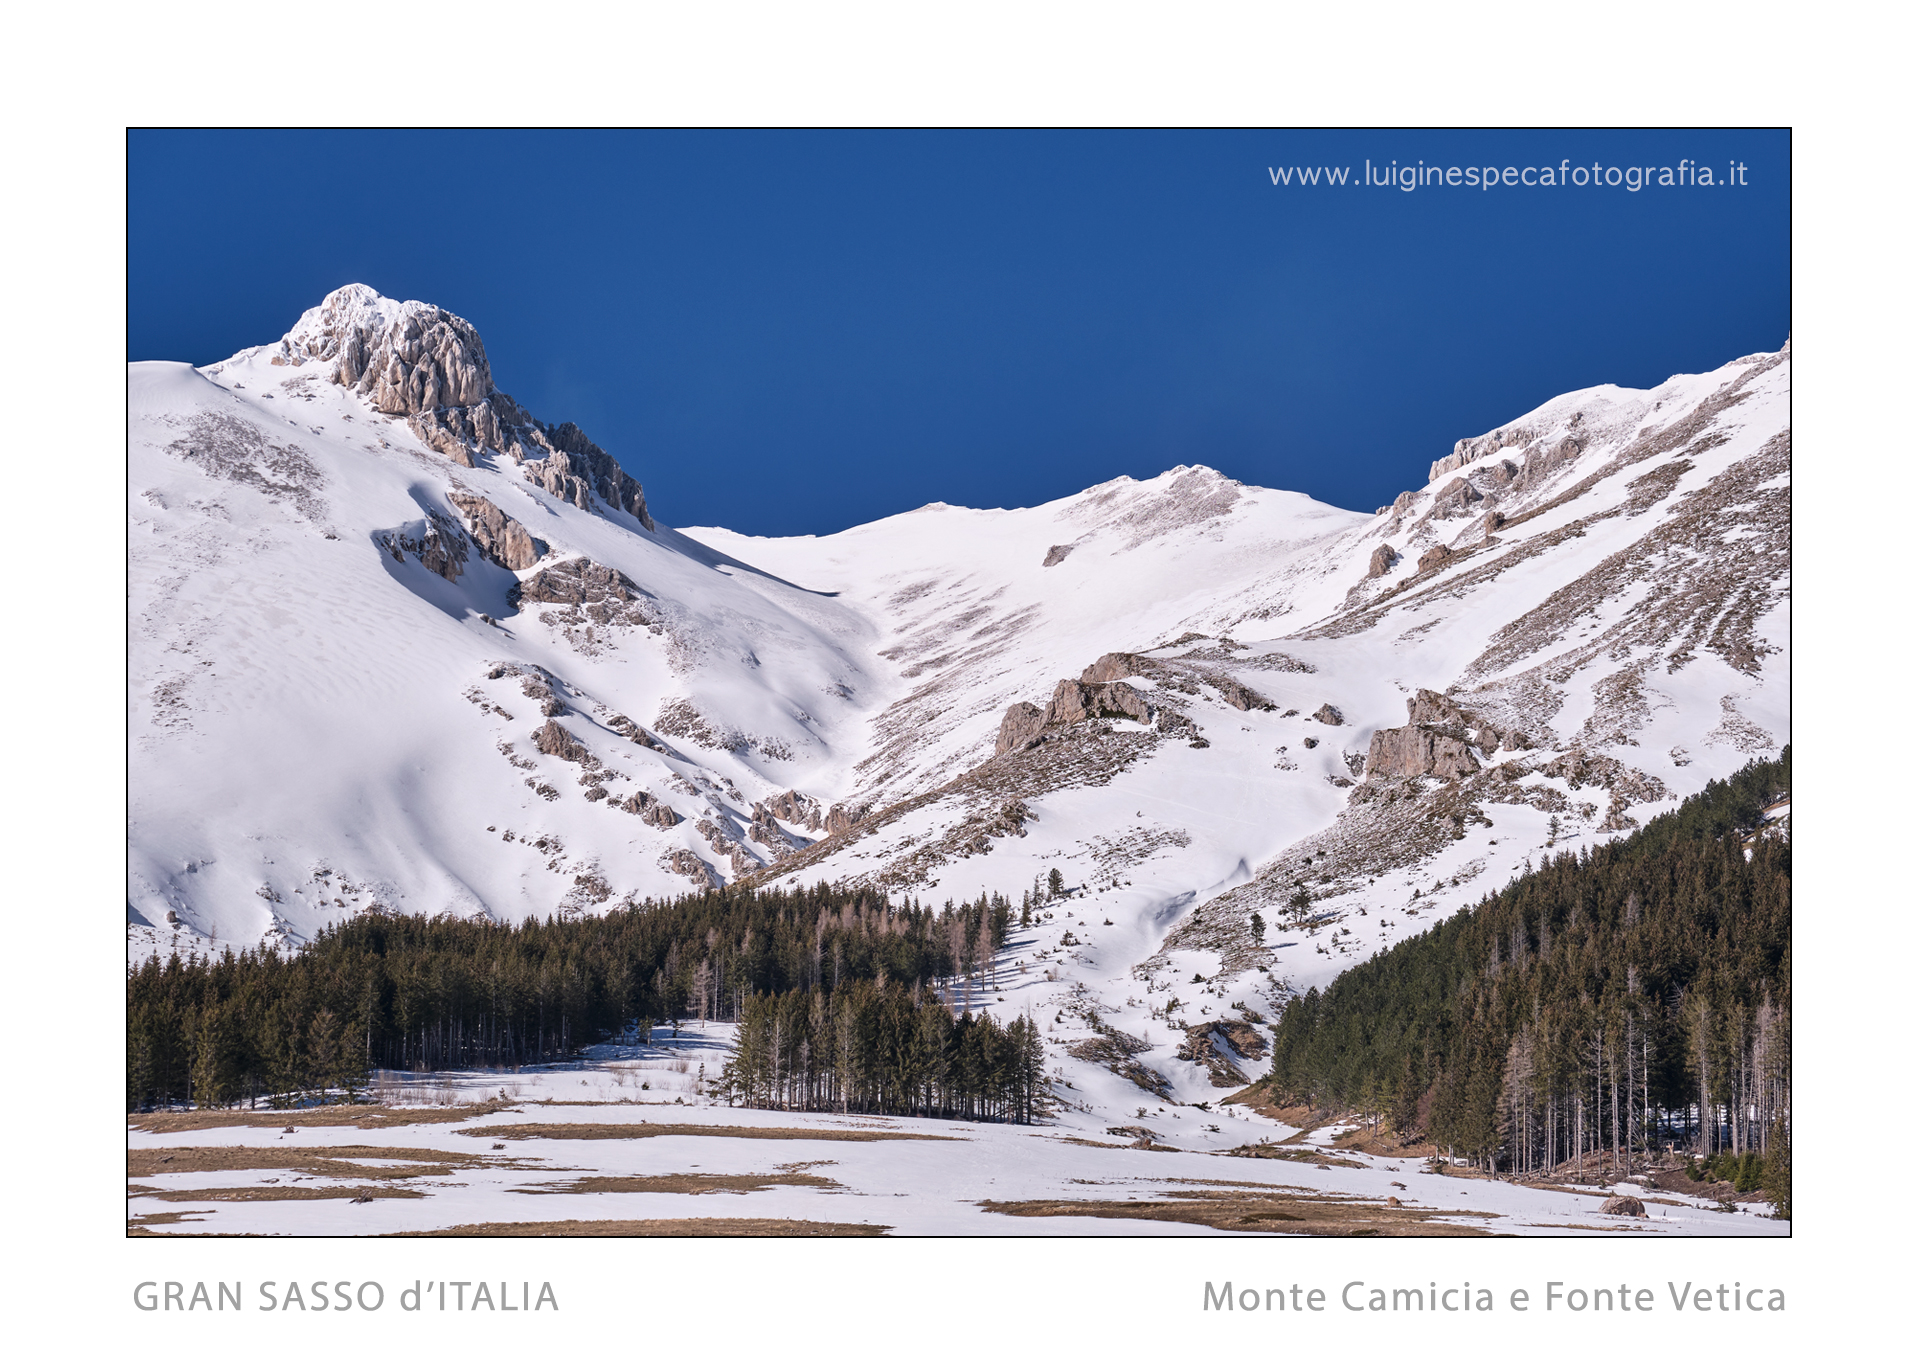 26 - Il Monte Camicia e Fonte Vetica - Gran Sasso